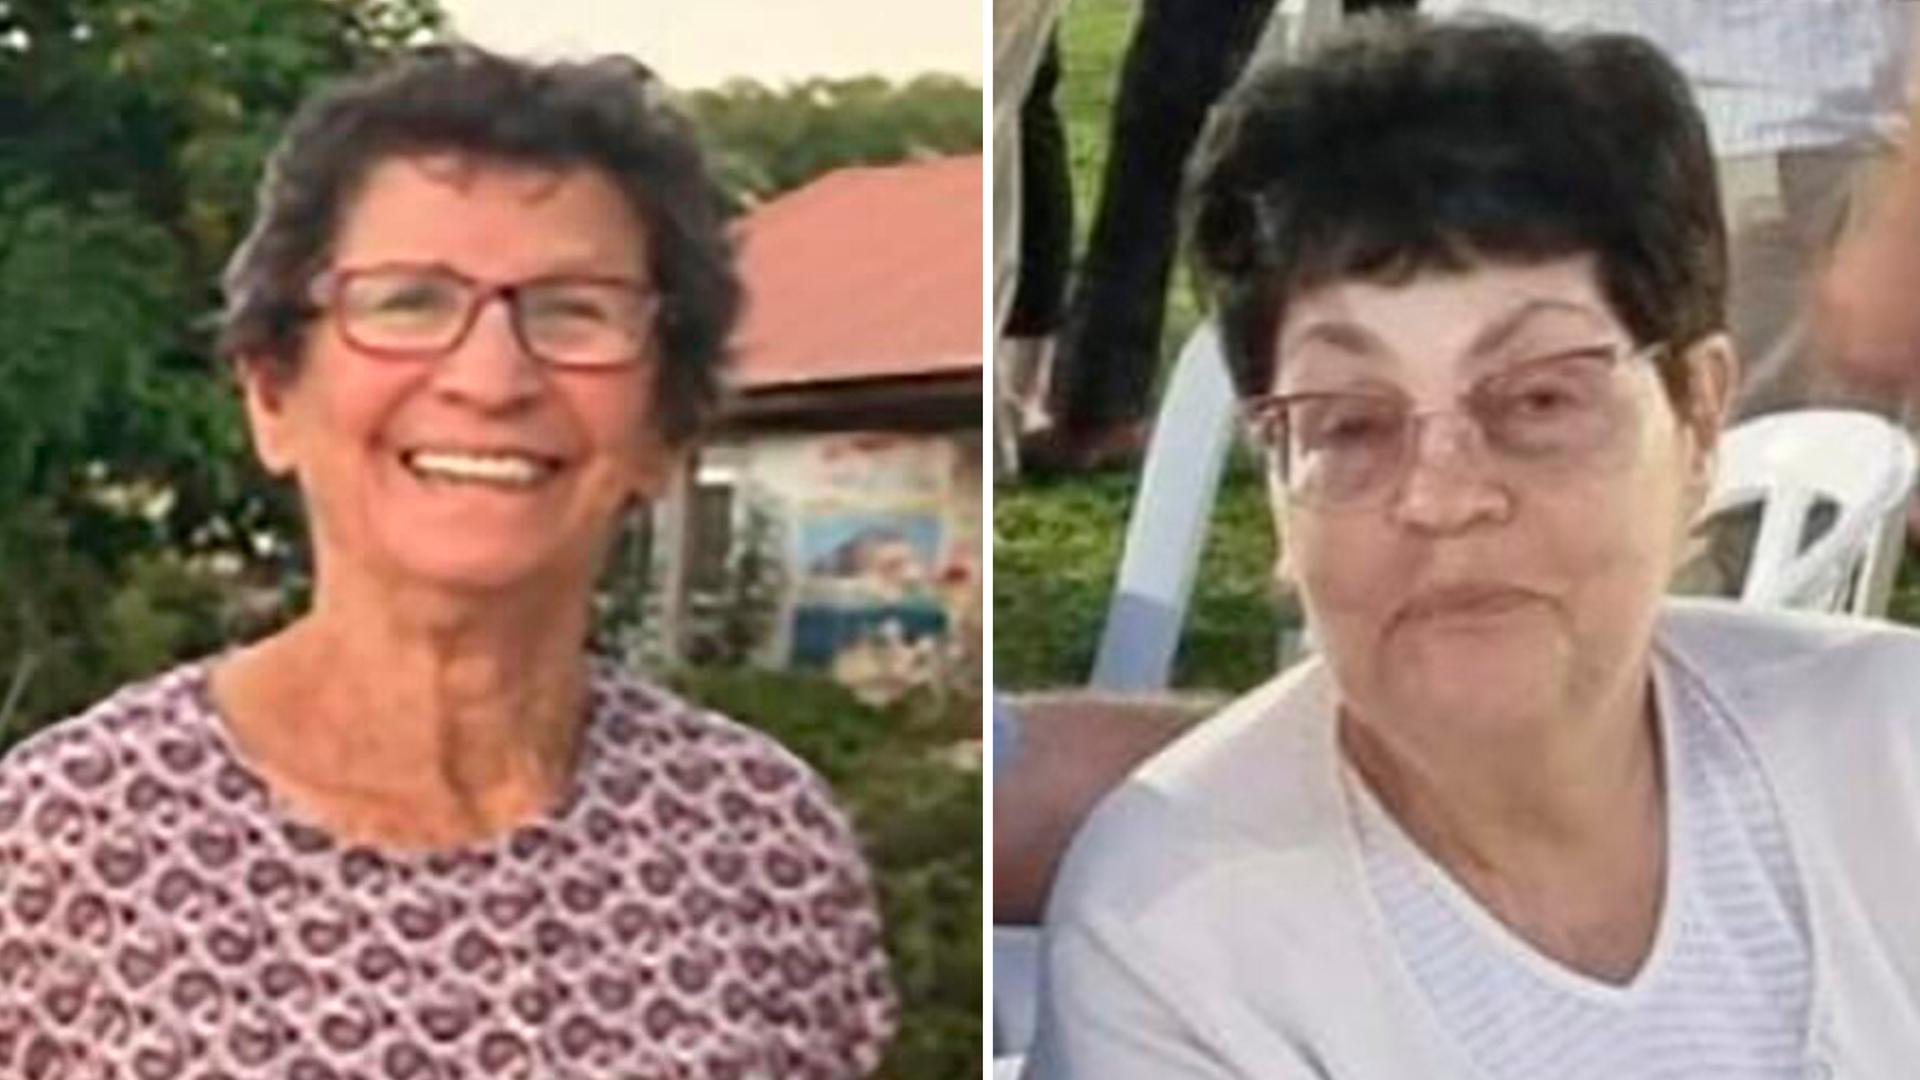 Die Fotos der beiden älteren Damen in Pullovern und mit Brillen sind nebeneinander moniert. Beide lächeln in die Kamera.